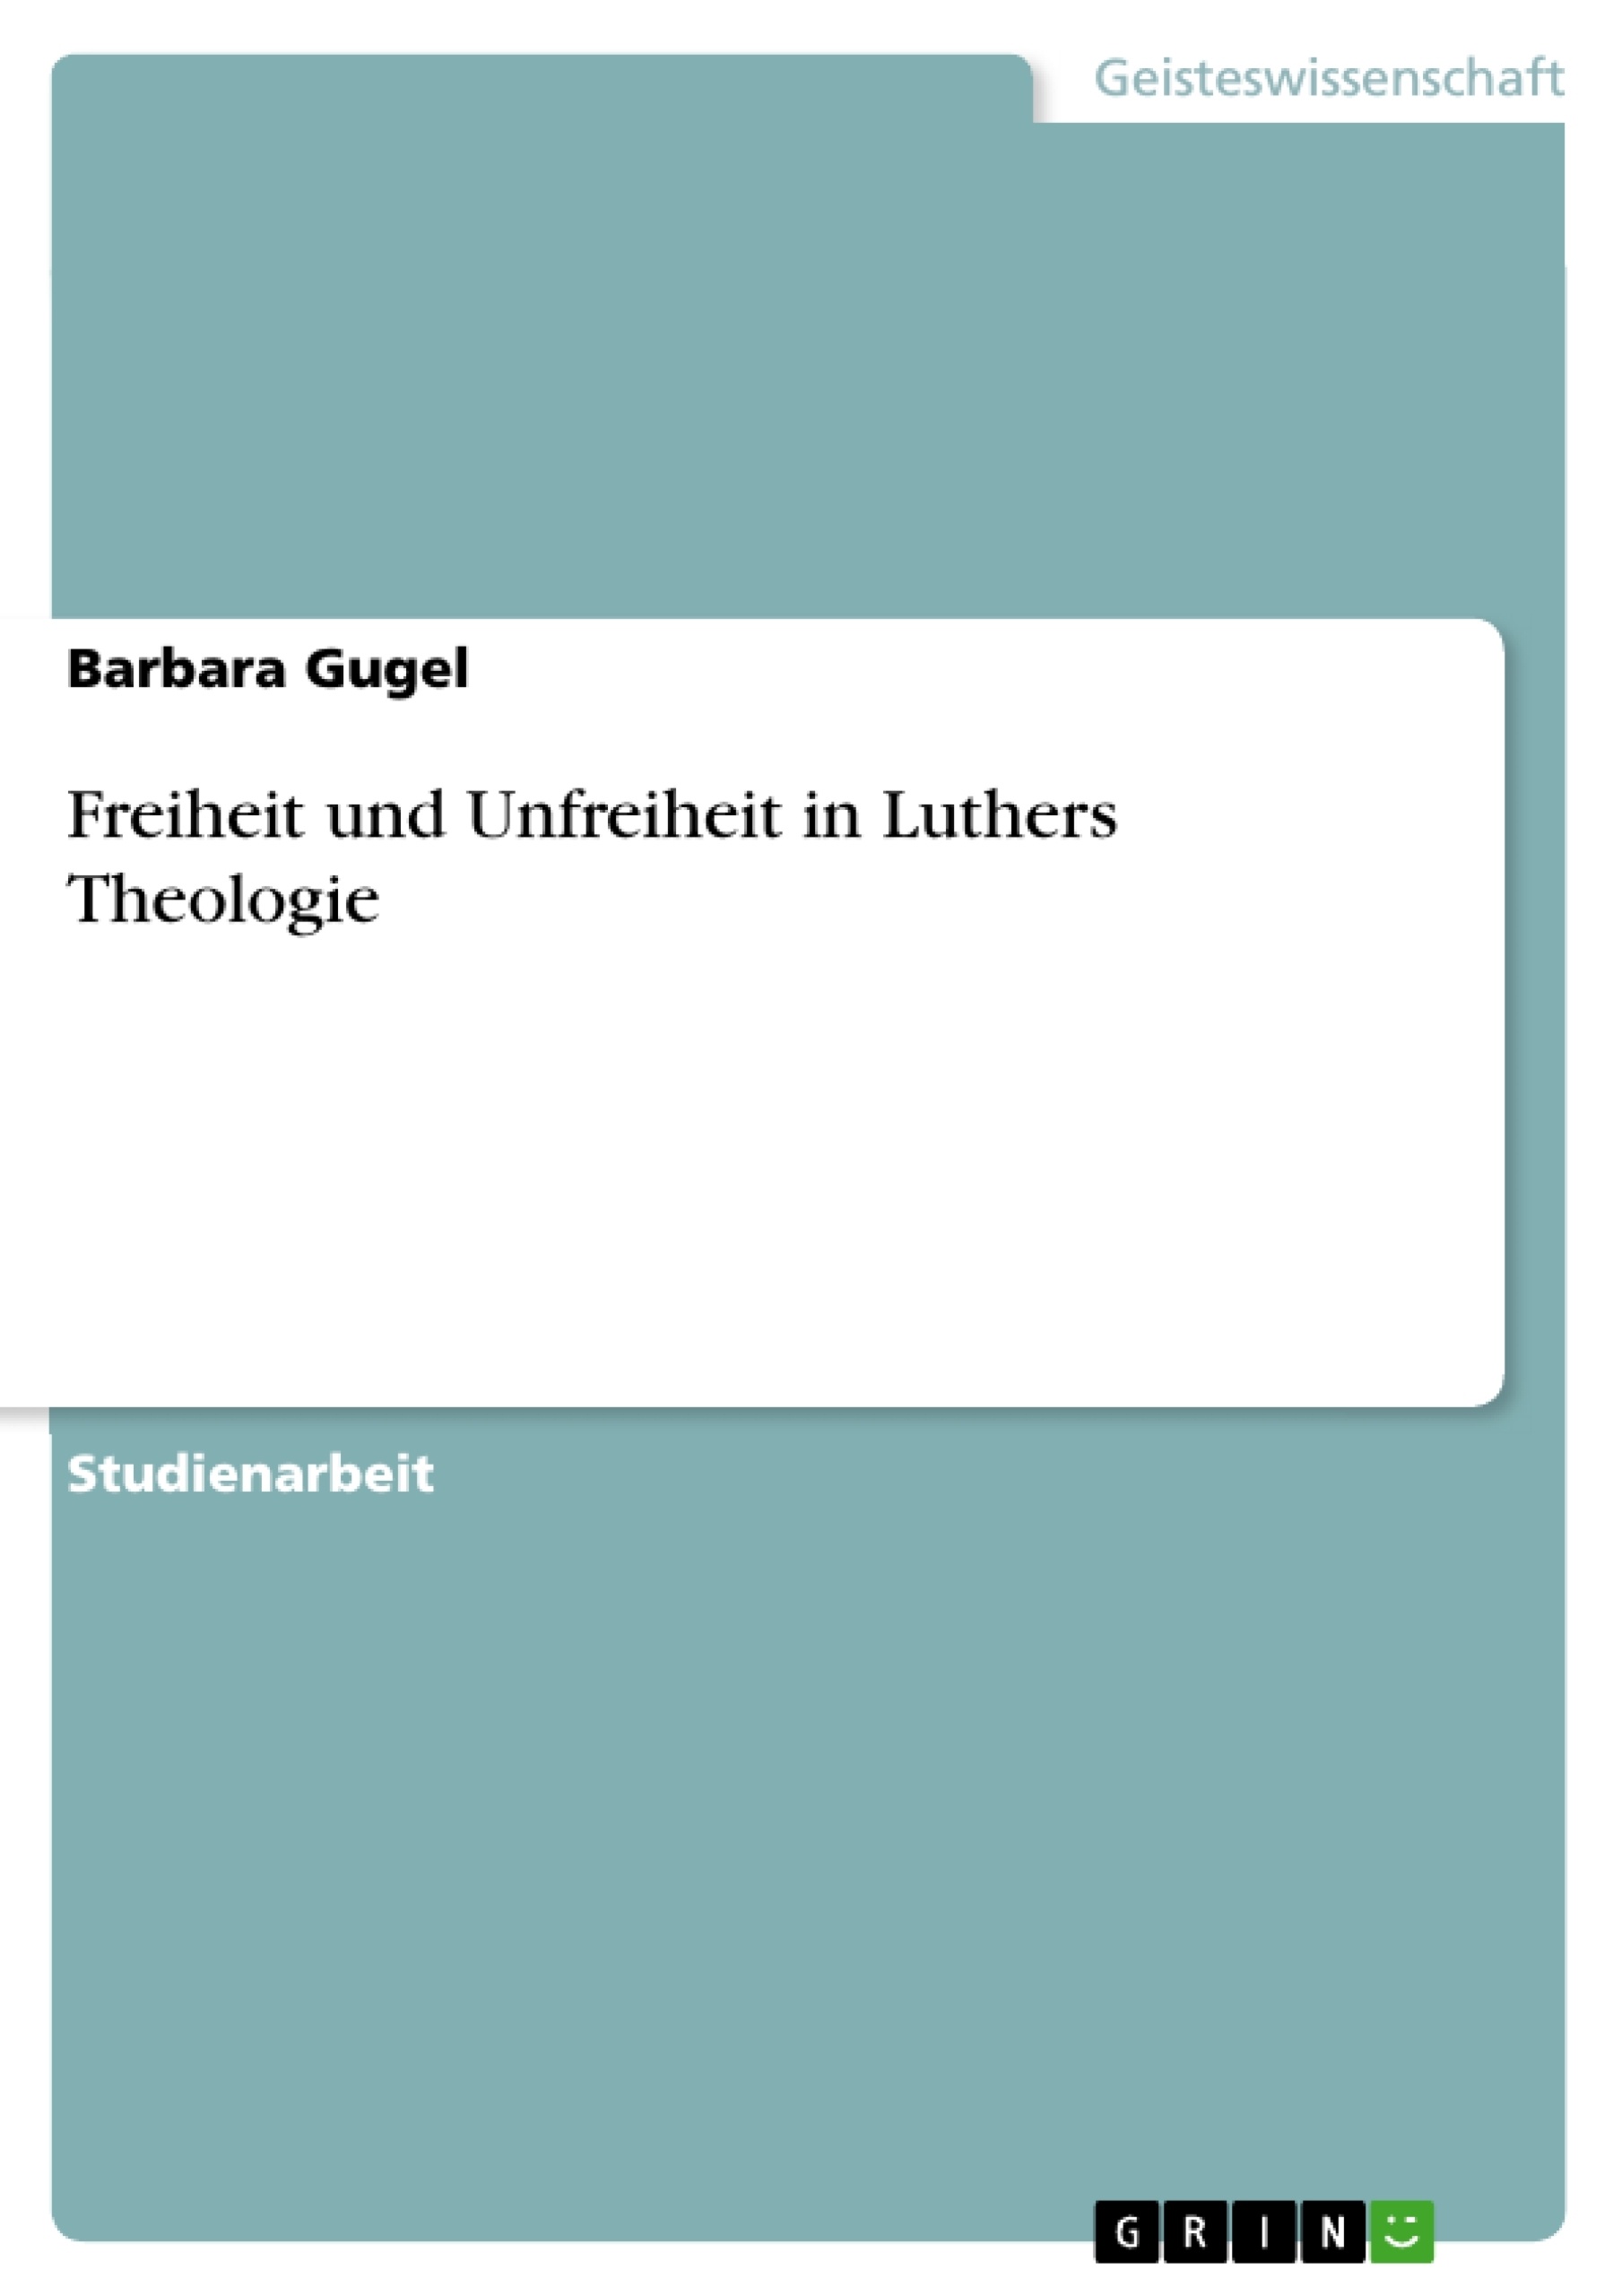 Title: Freiheit und Unfreiheit in Luthers Theologie